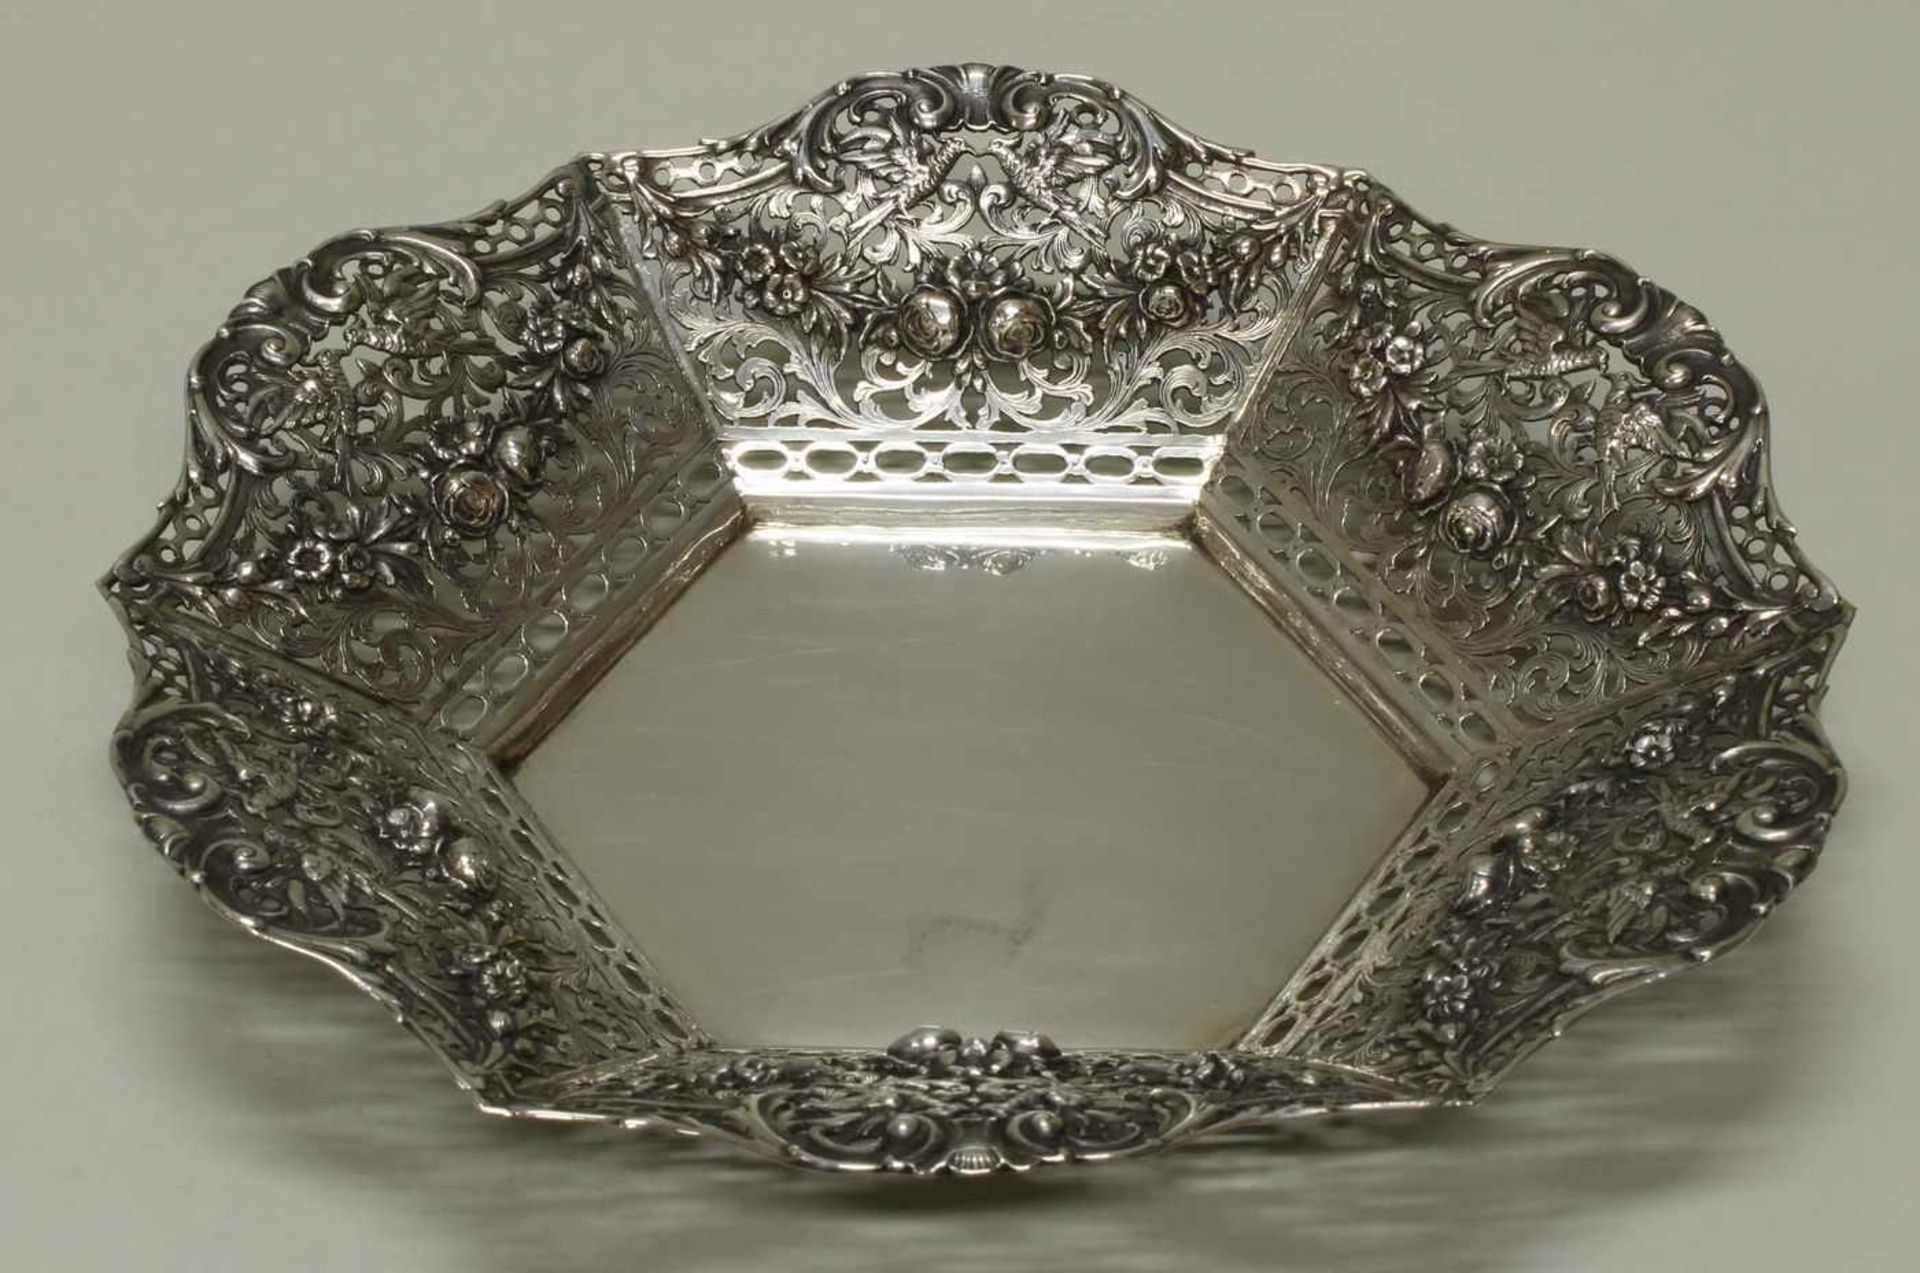 Durchbruchschale, Silber 800, deutsch, hexagonaler Spiegel, reliefierte Blüten-, Vogel- und